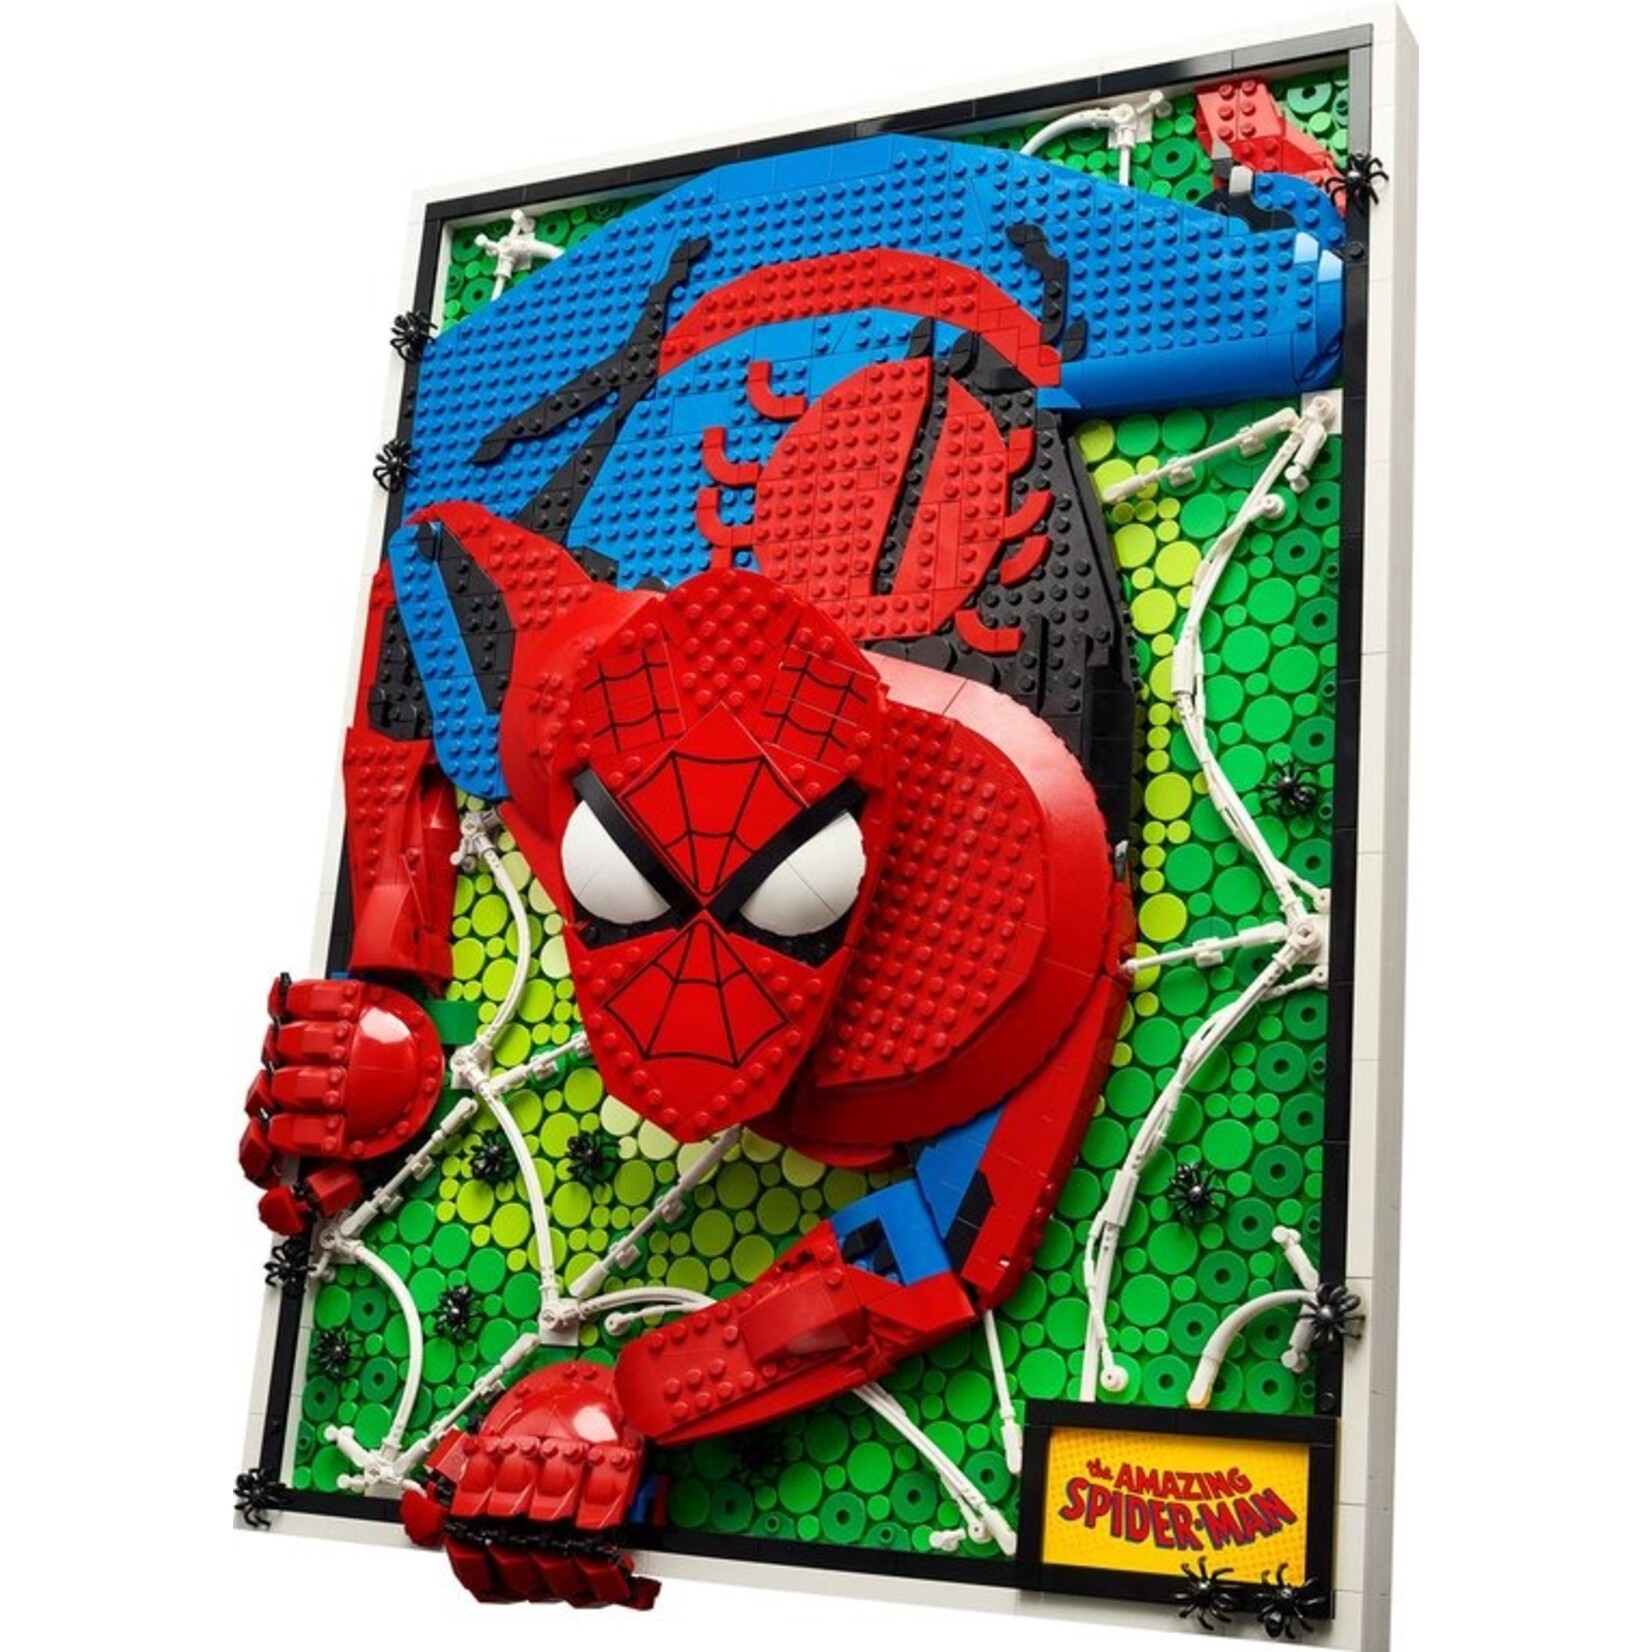 LEGO LEGO ART De geweldige Spider-Man- 31209